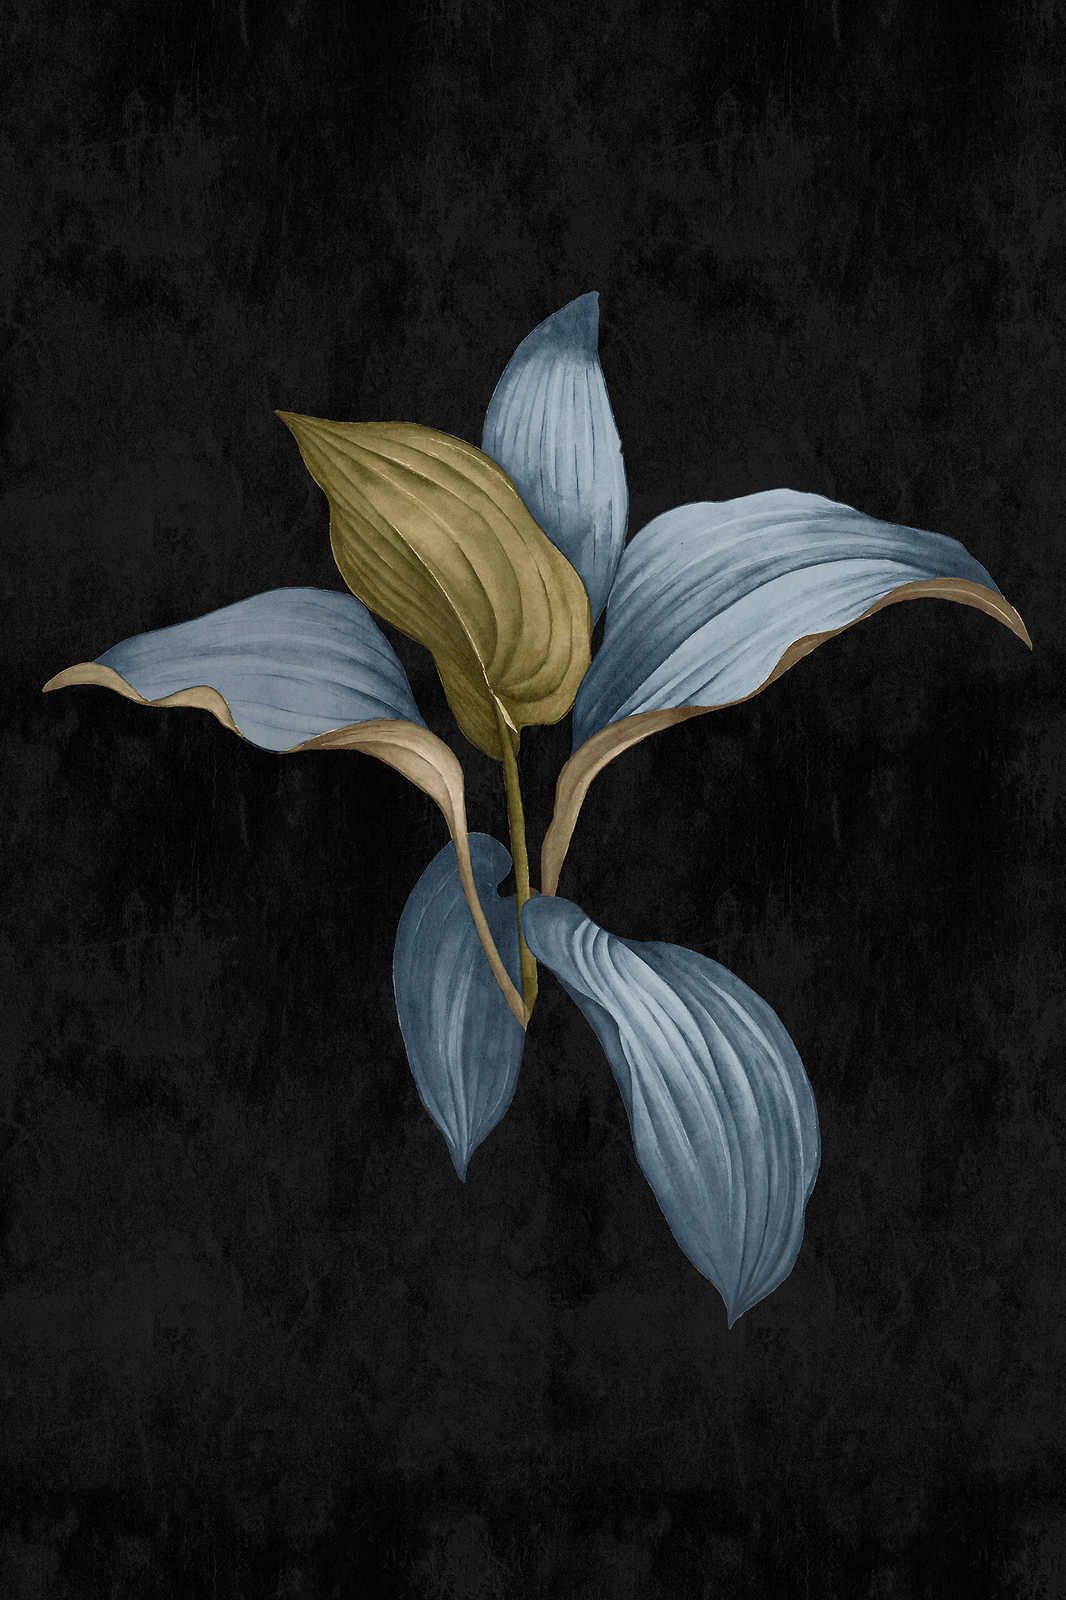             Fiji 3 - Quadro su tela scura con disegno botanico in blu e verde - 0,60 m x 0,90 m
        